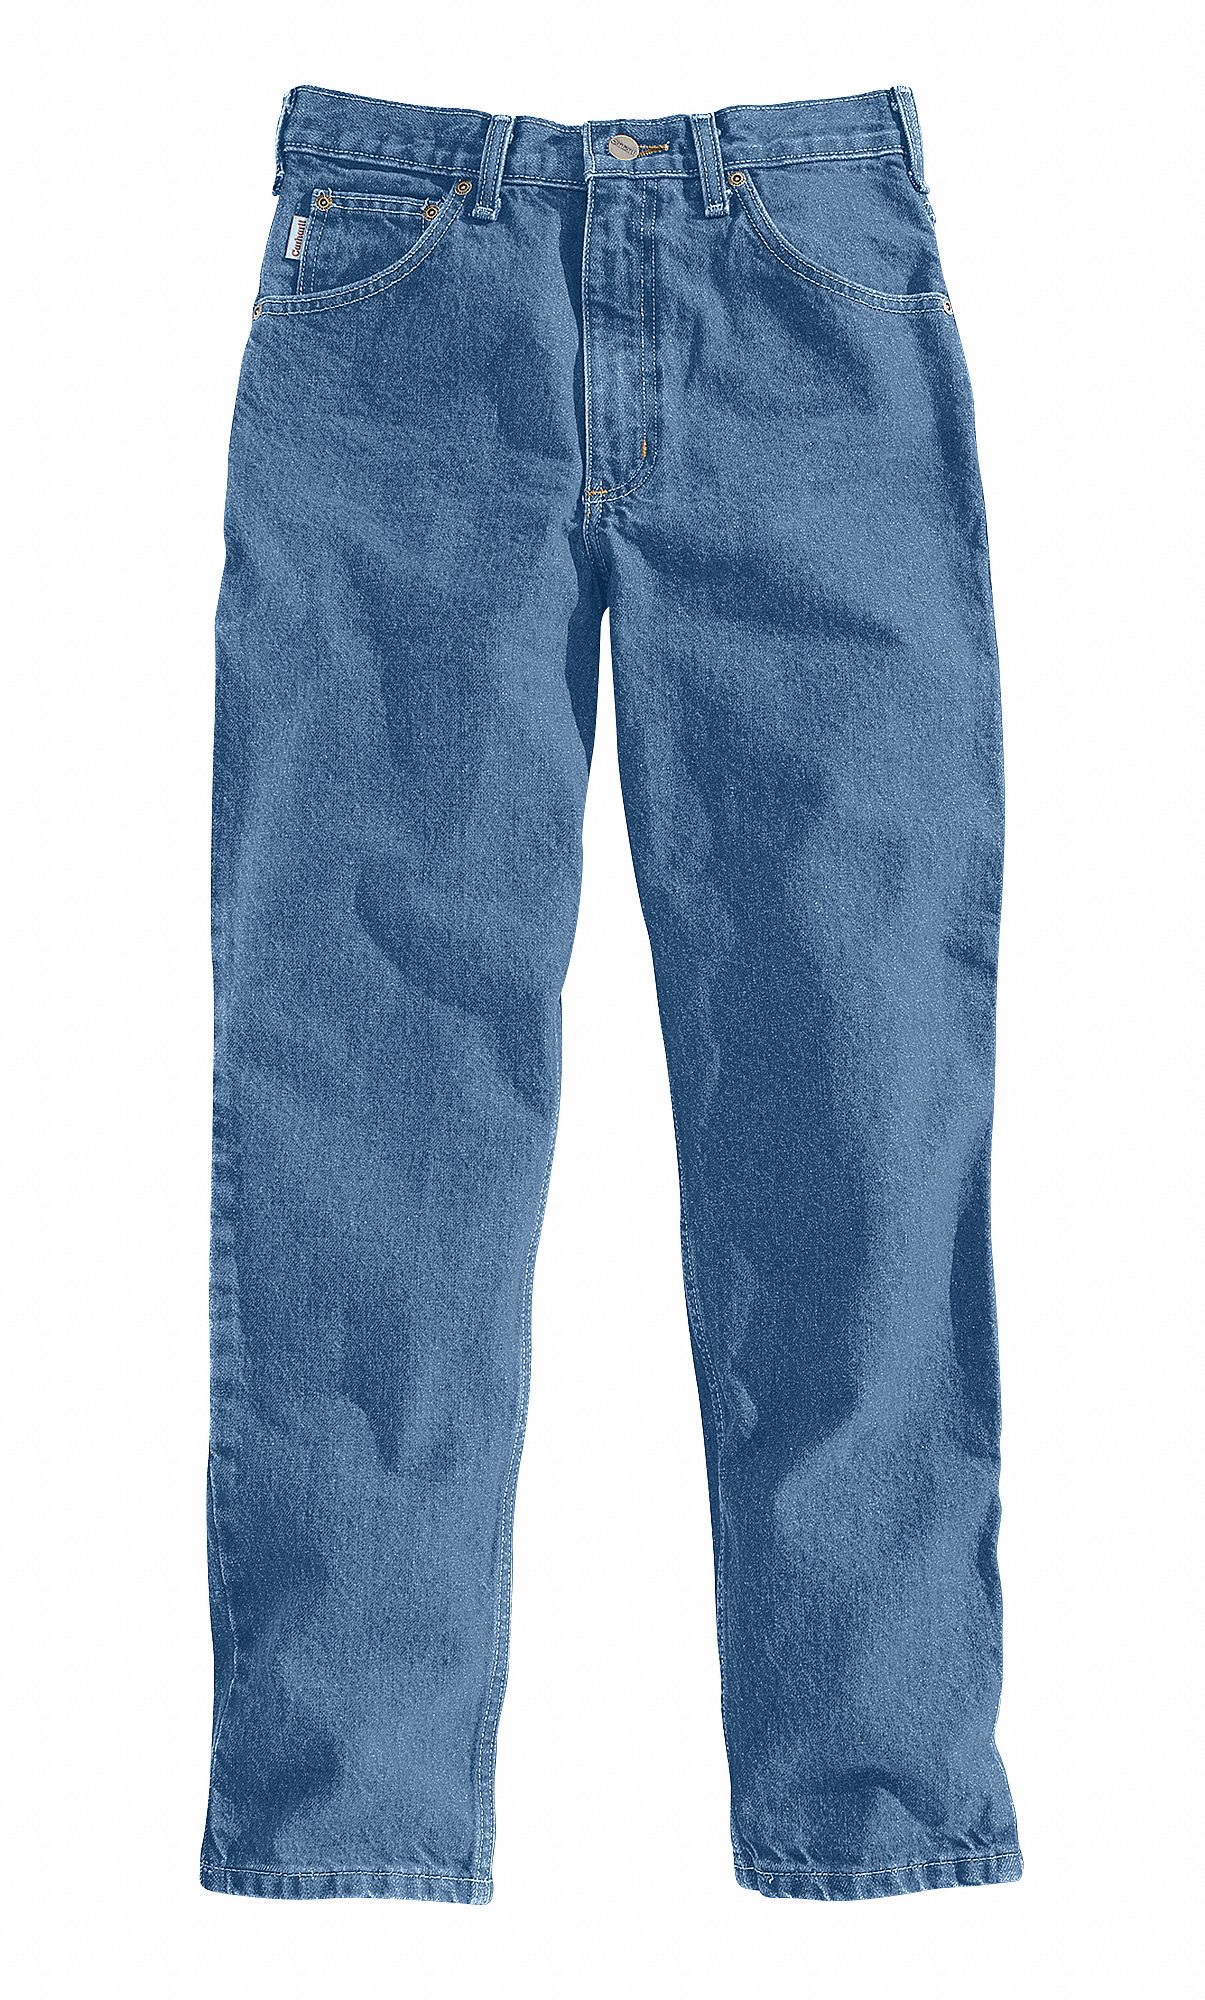 levis 501 t jeans